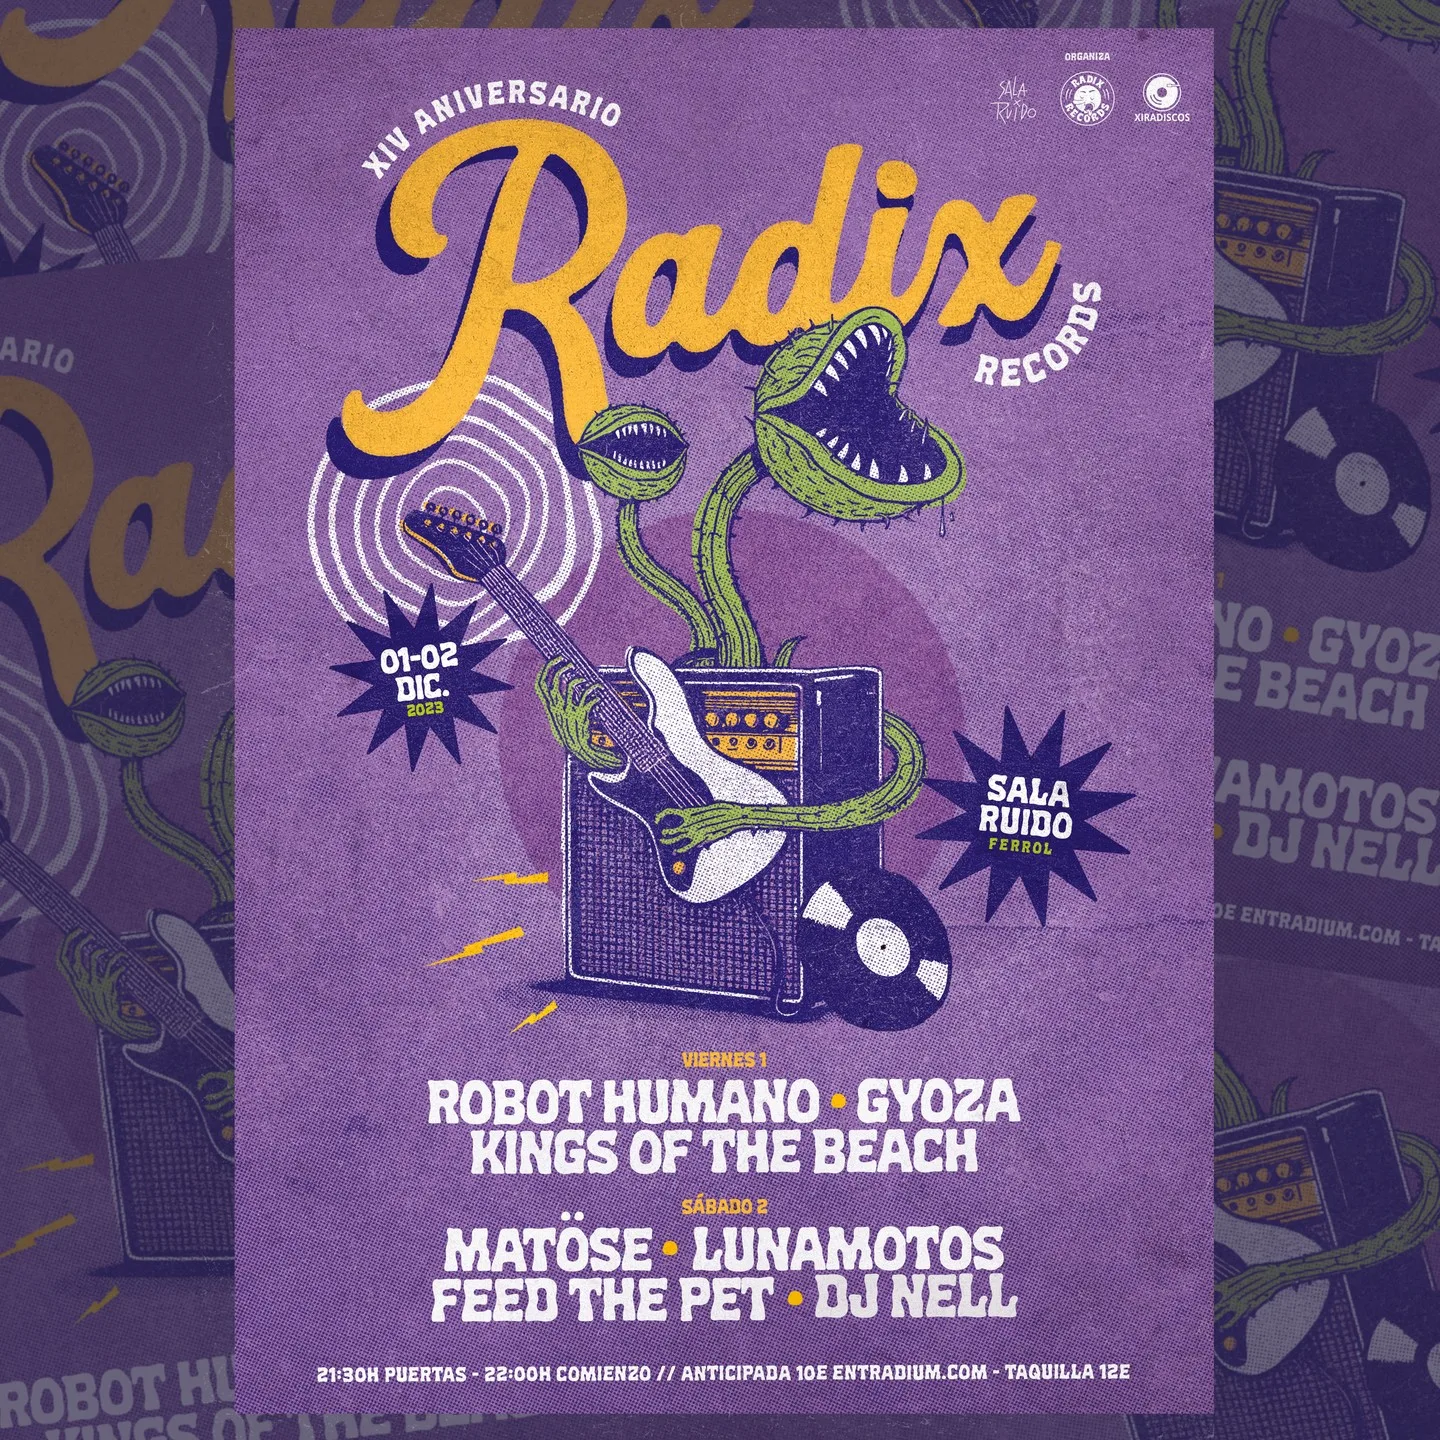 Conciertos fiesta XIV aniversario Radix Records